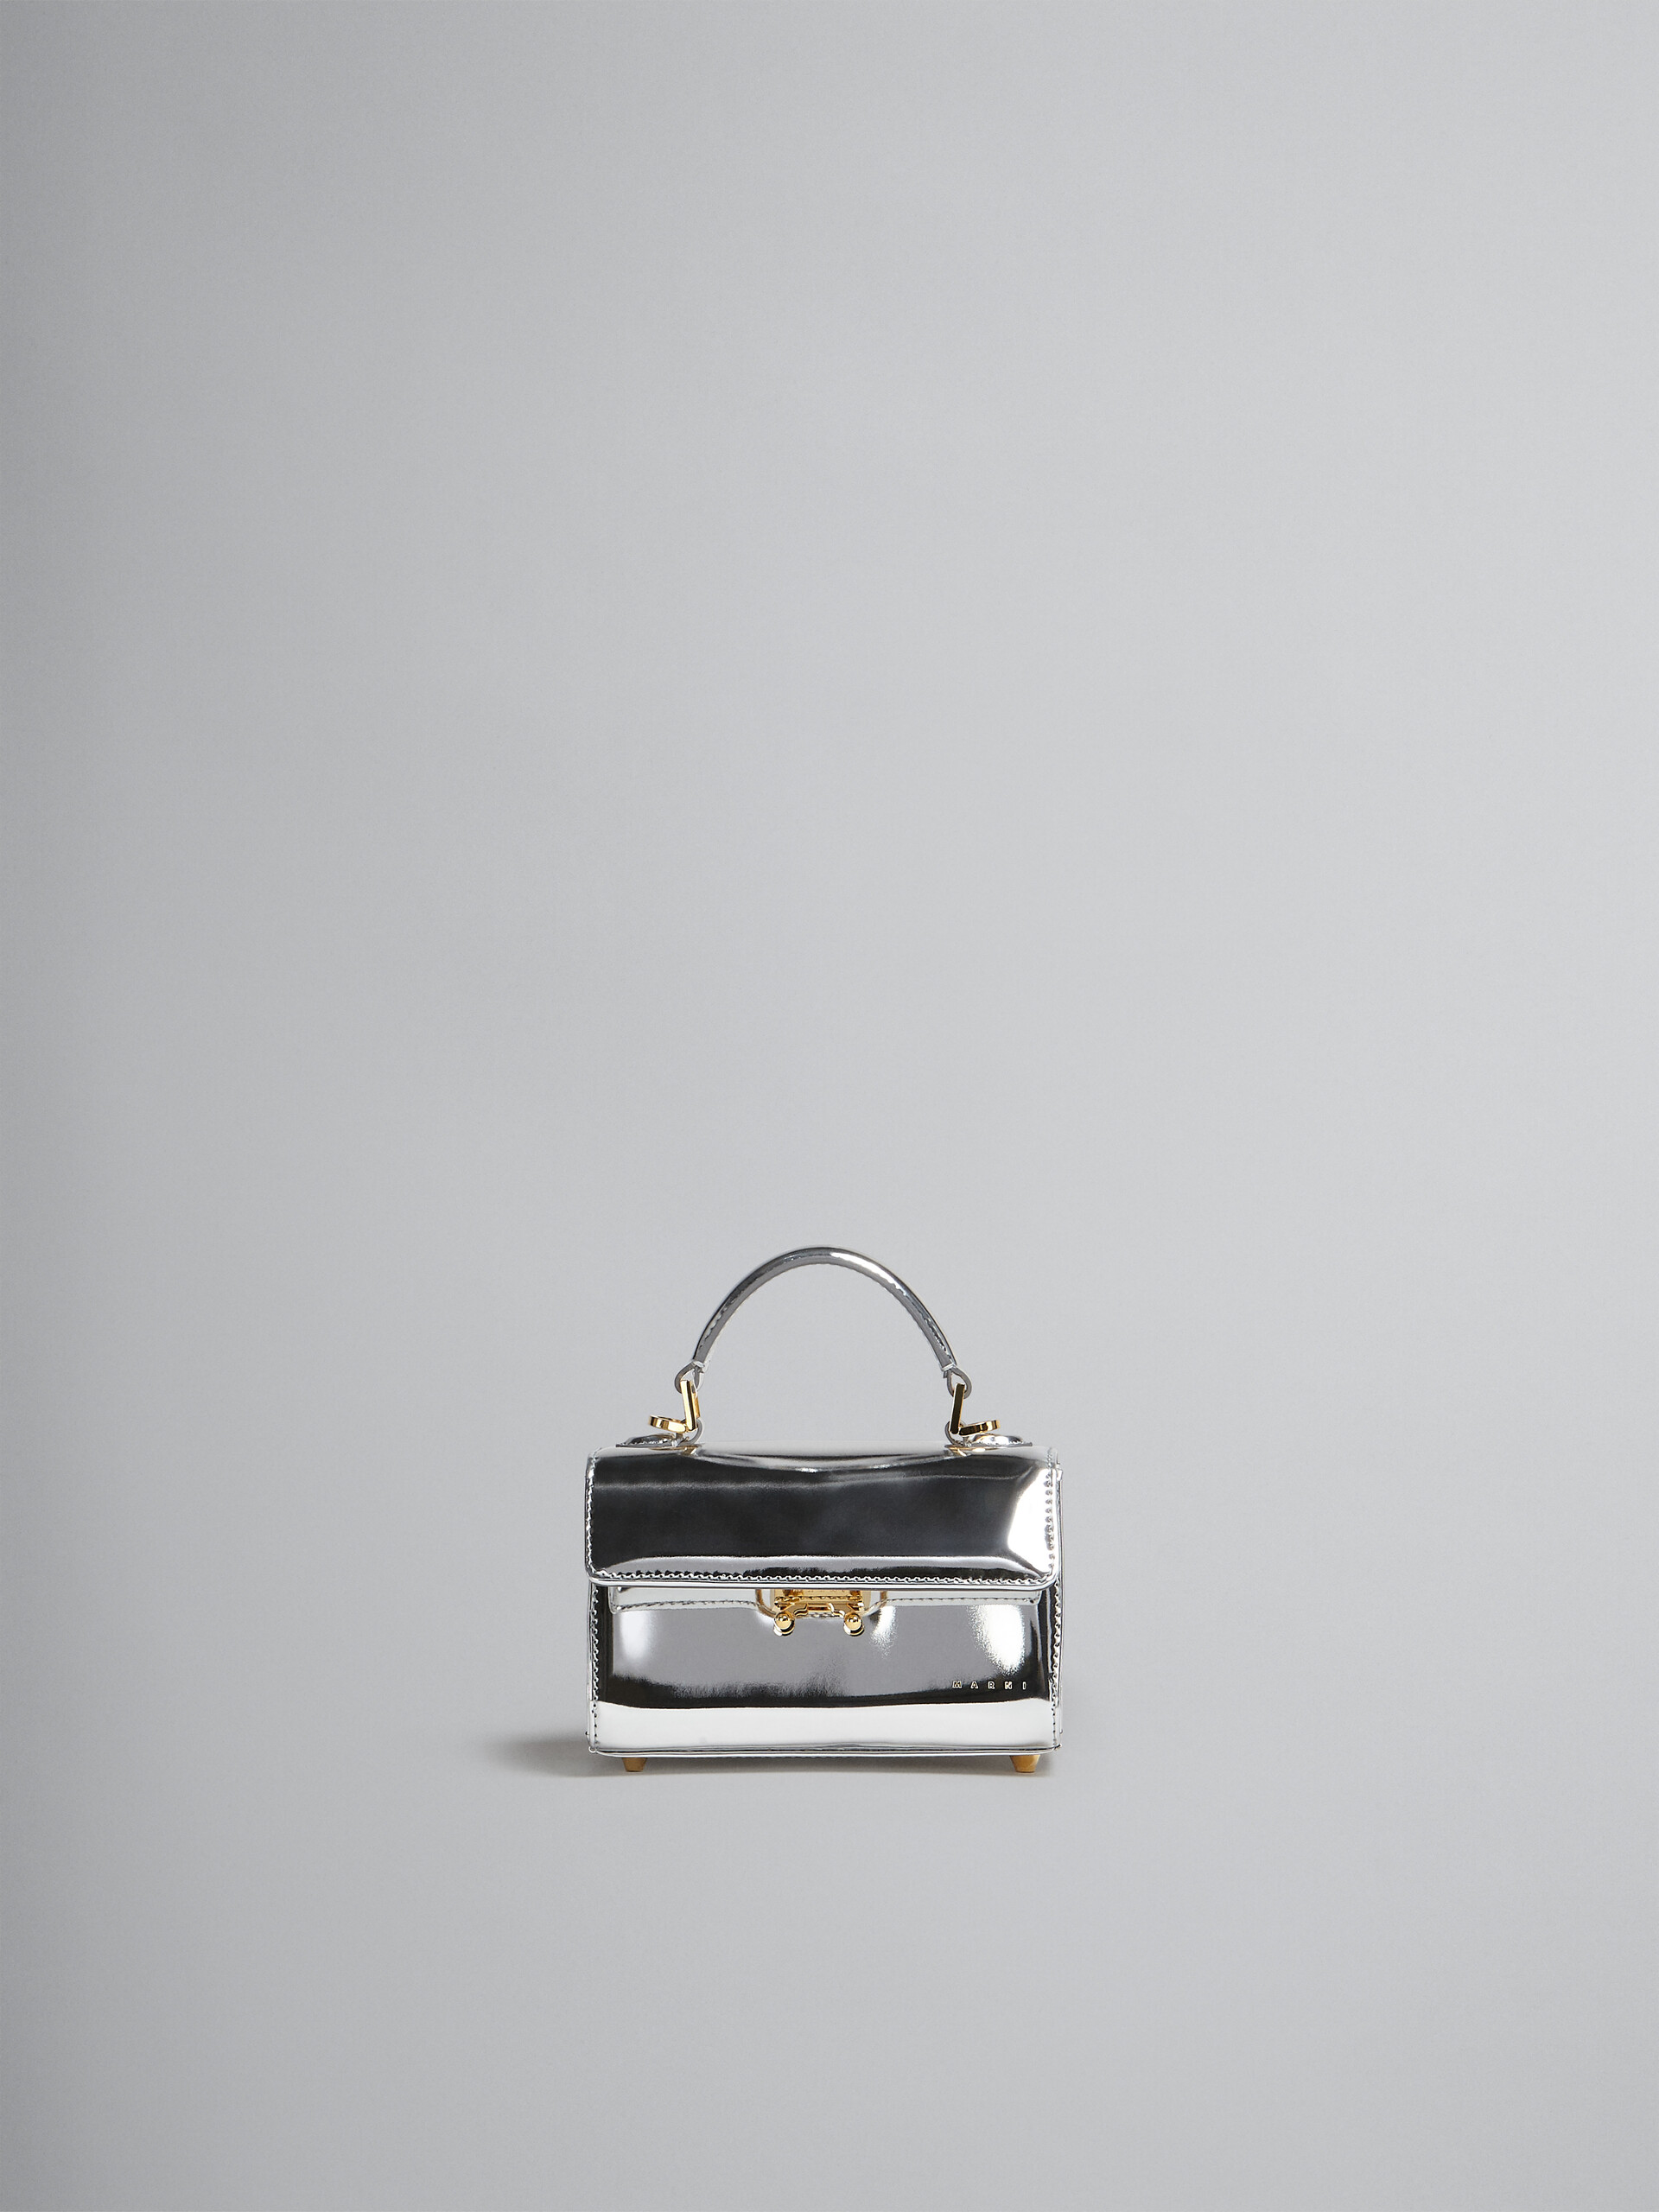 Relativity Bag Mini in pelle specchiata argento - Borse a mano - Image 1